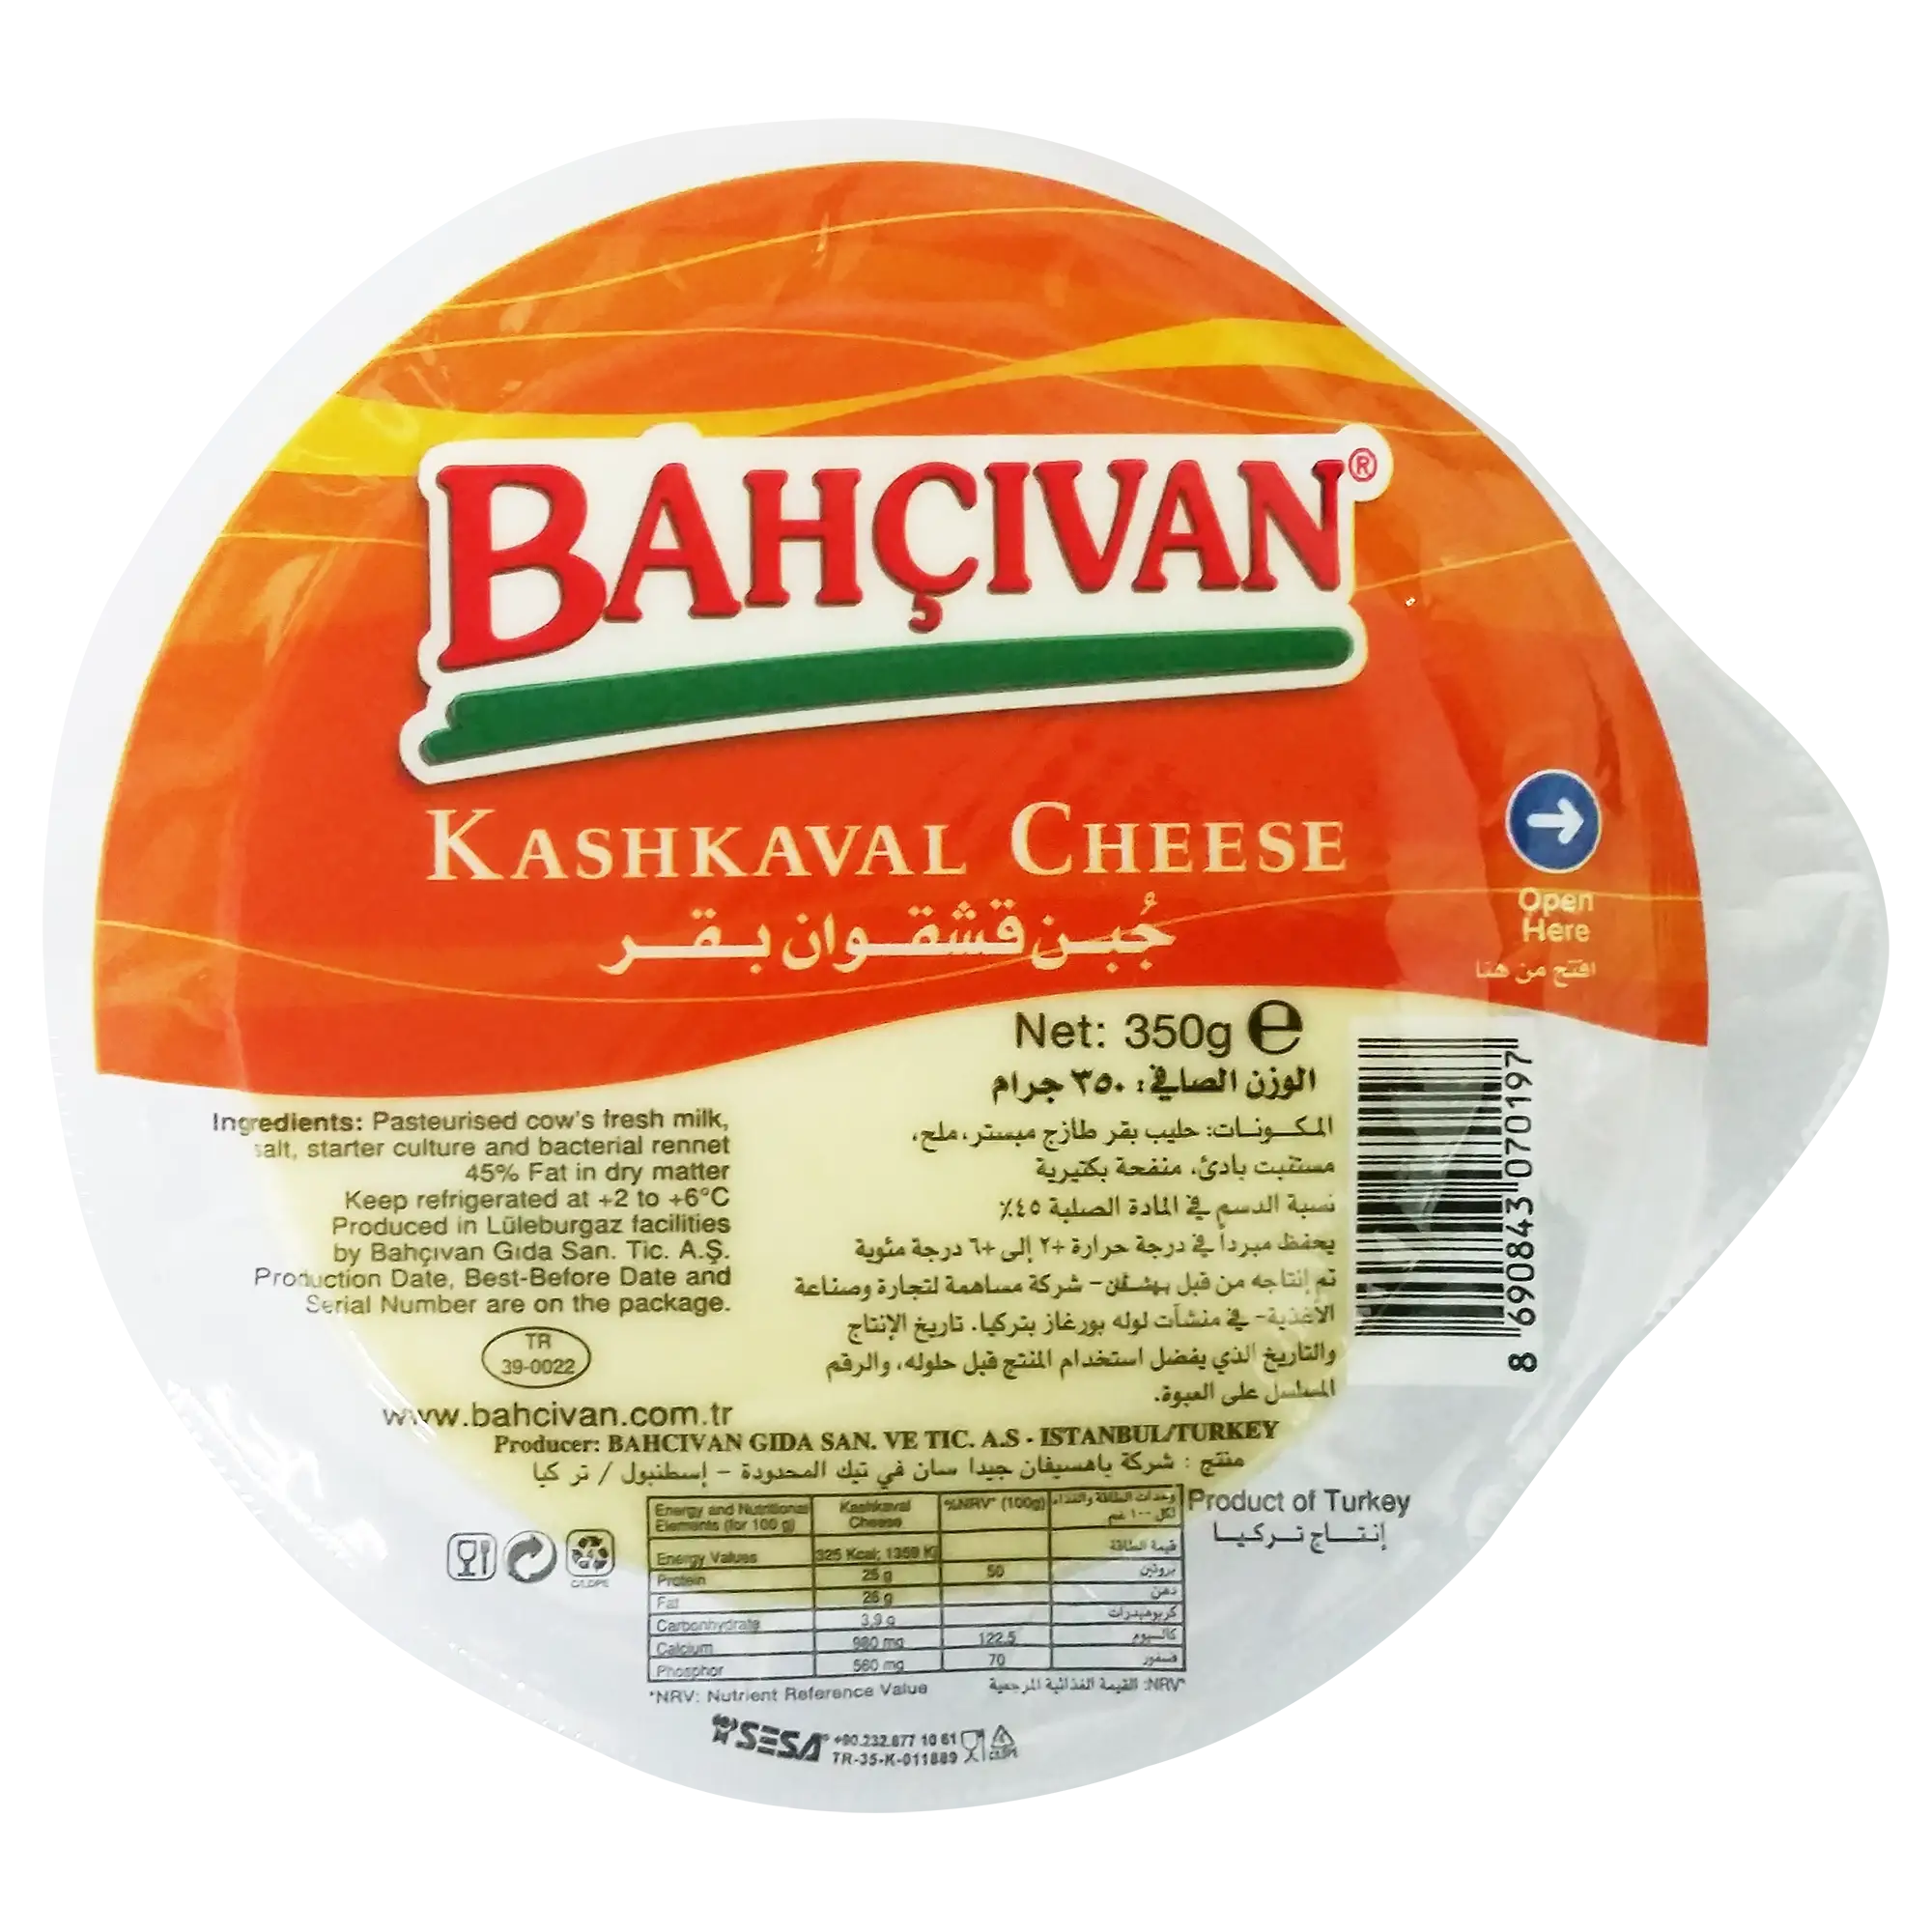 KAC -Bahcivan Kashkaval Cheese Small